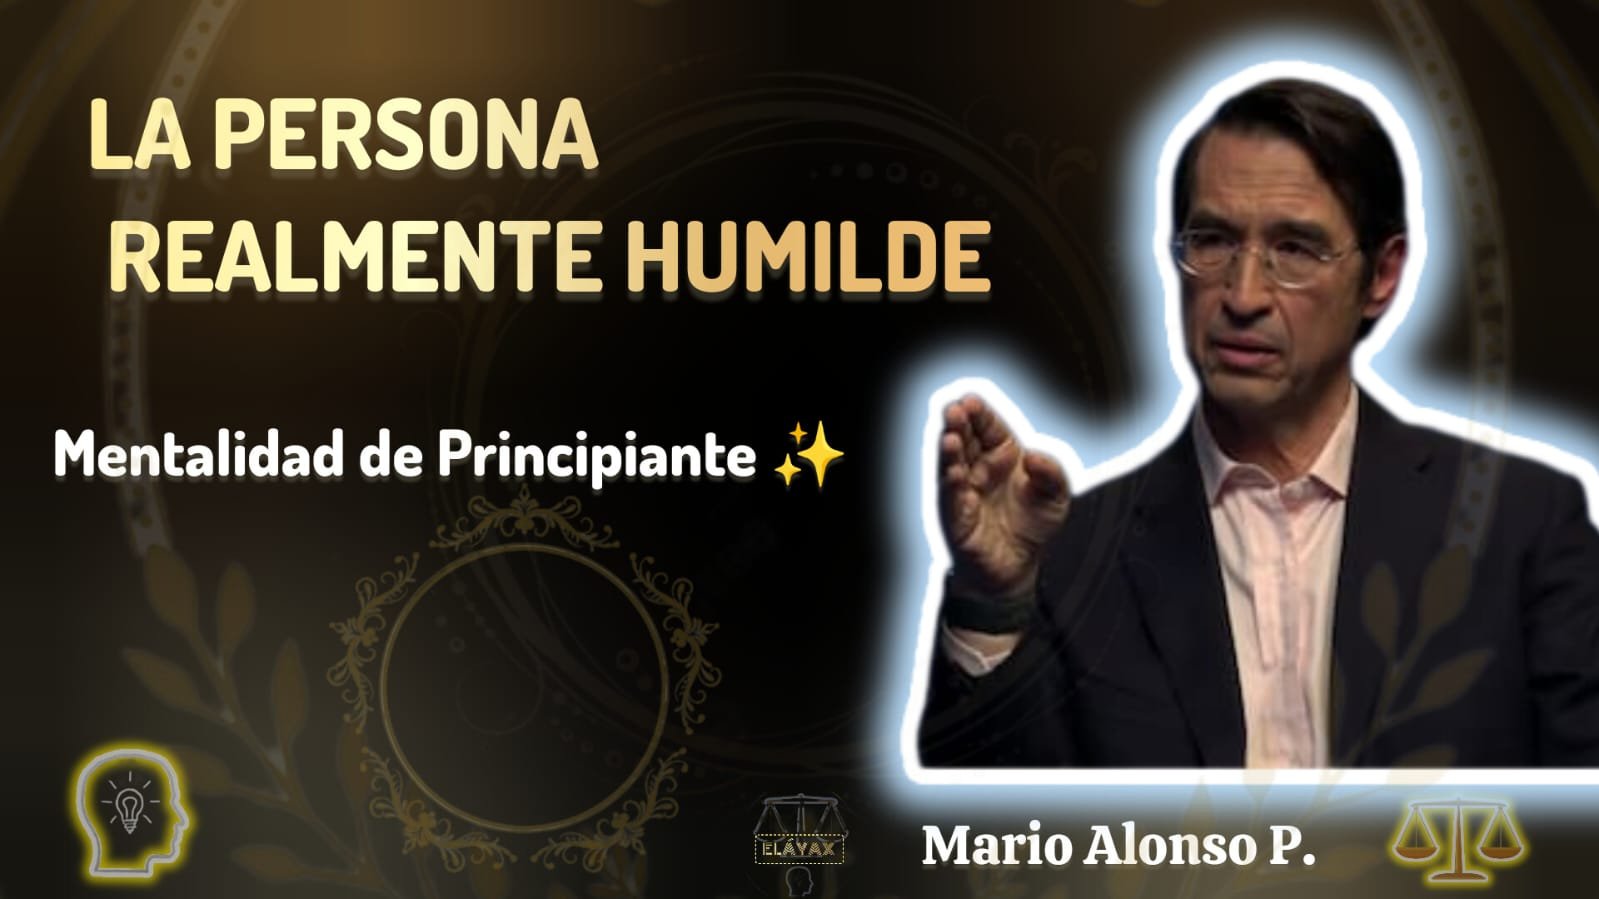 La persona realmente humilde según Mario Alonso Puig